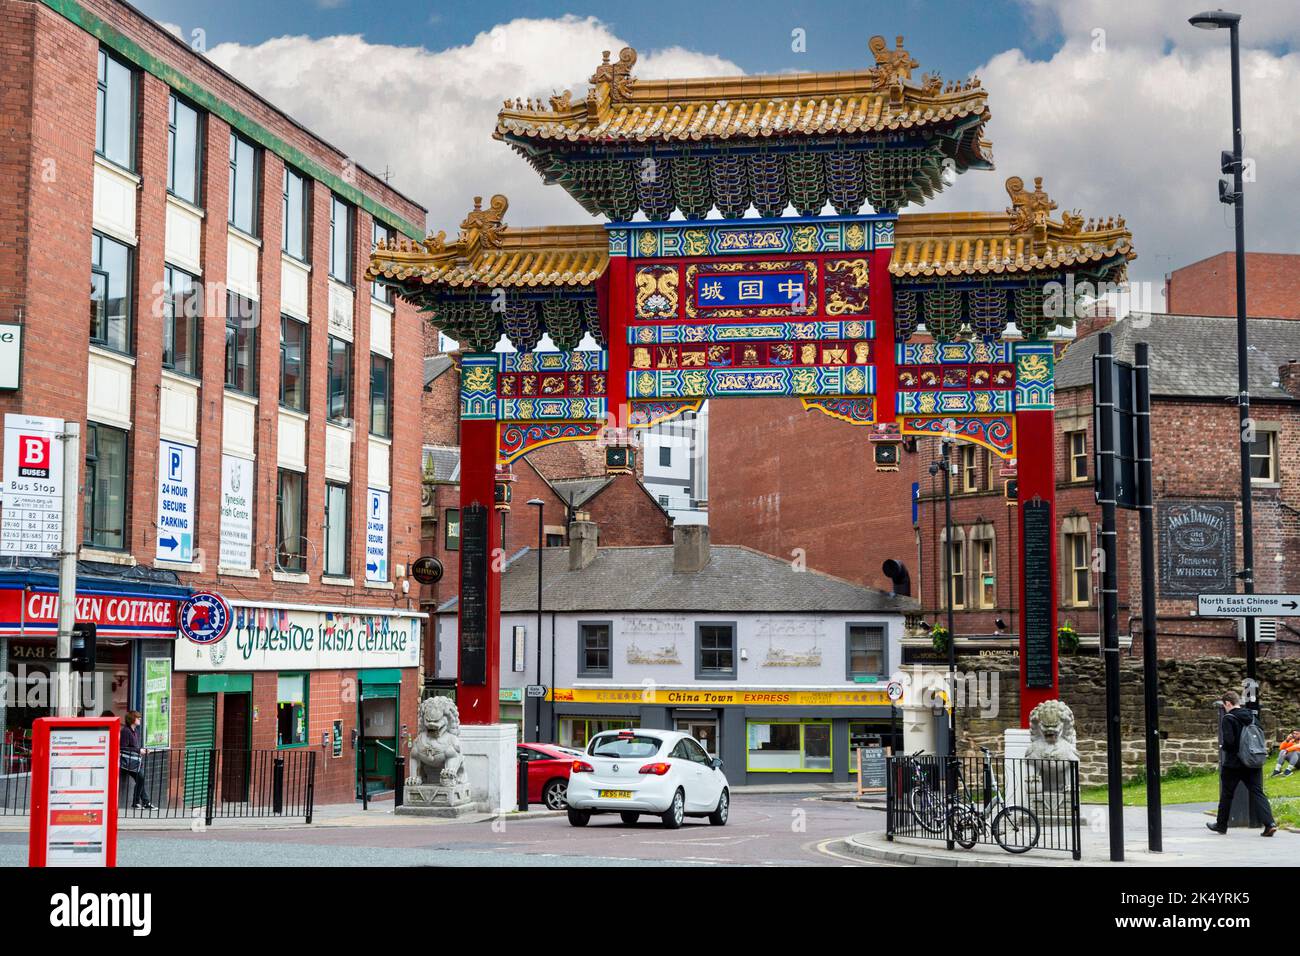 Newcastle-upon-Tyne, Inghilterra, Regno Unito. Chinatown arco di ingresso St Andrews Street. La diversità culturale: Centro irlandese, American Whisley, Restaura cinese Foto Stock